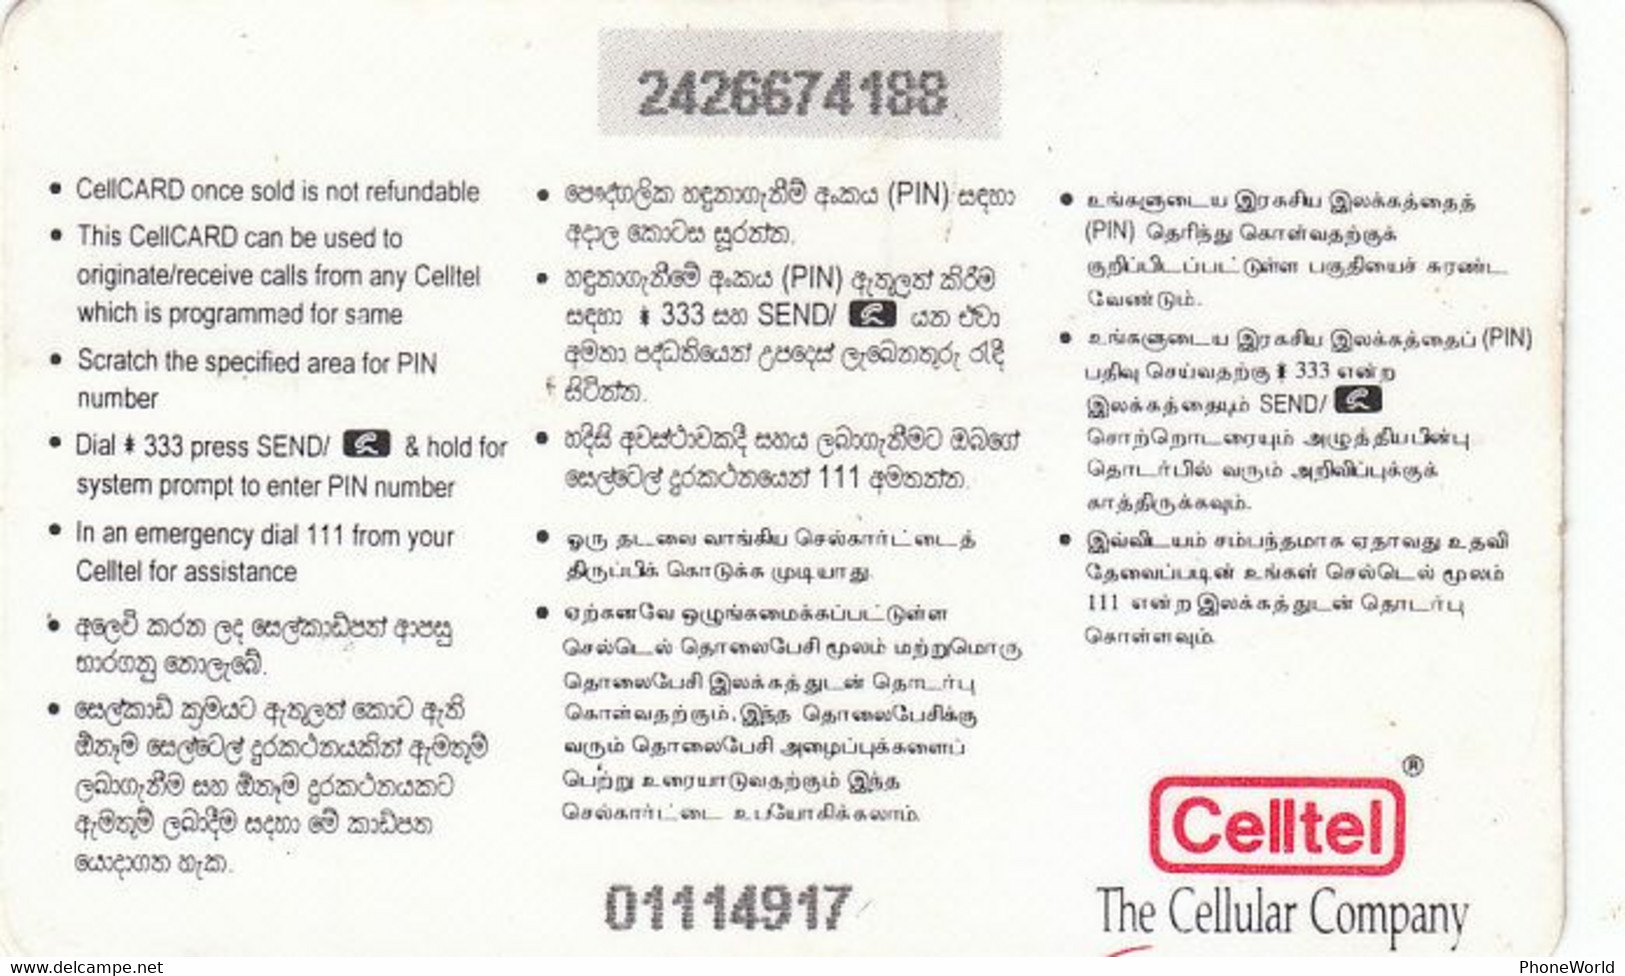 Sri Lanka, Cellcard  350Rps With Text, Santa & Christmas, With Crease, RR - Sri Lanka (Ceilán)